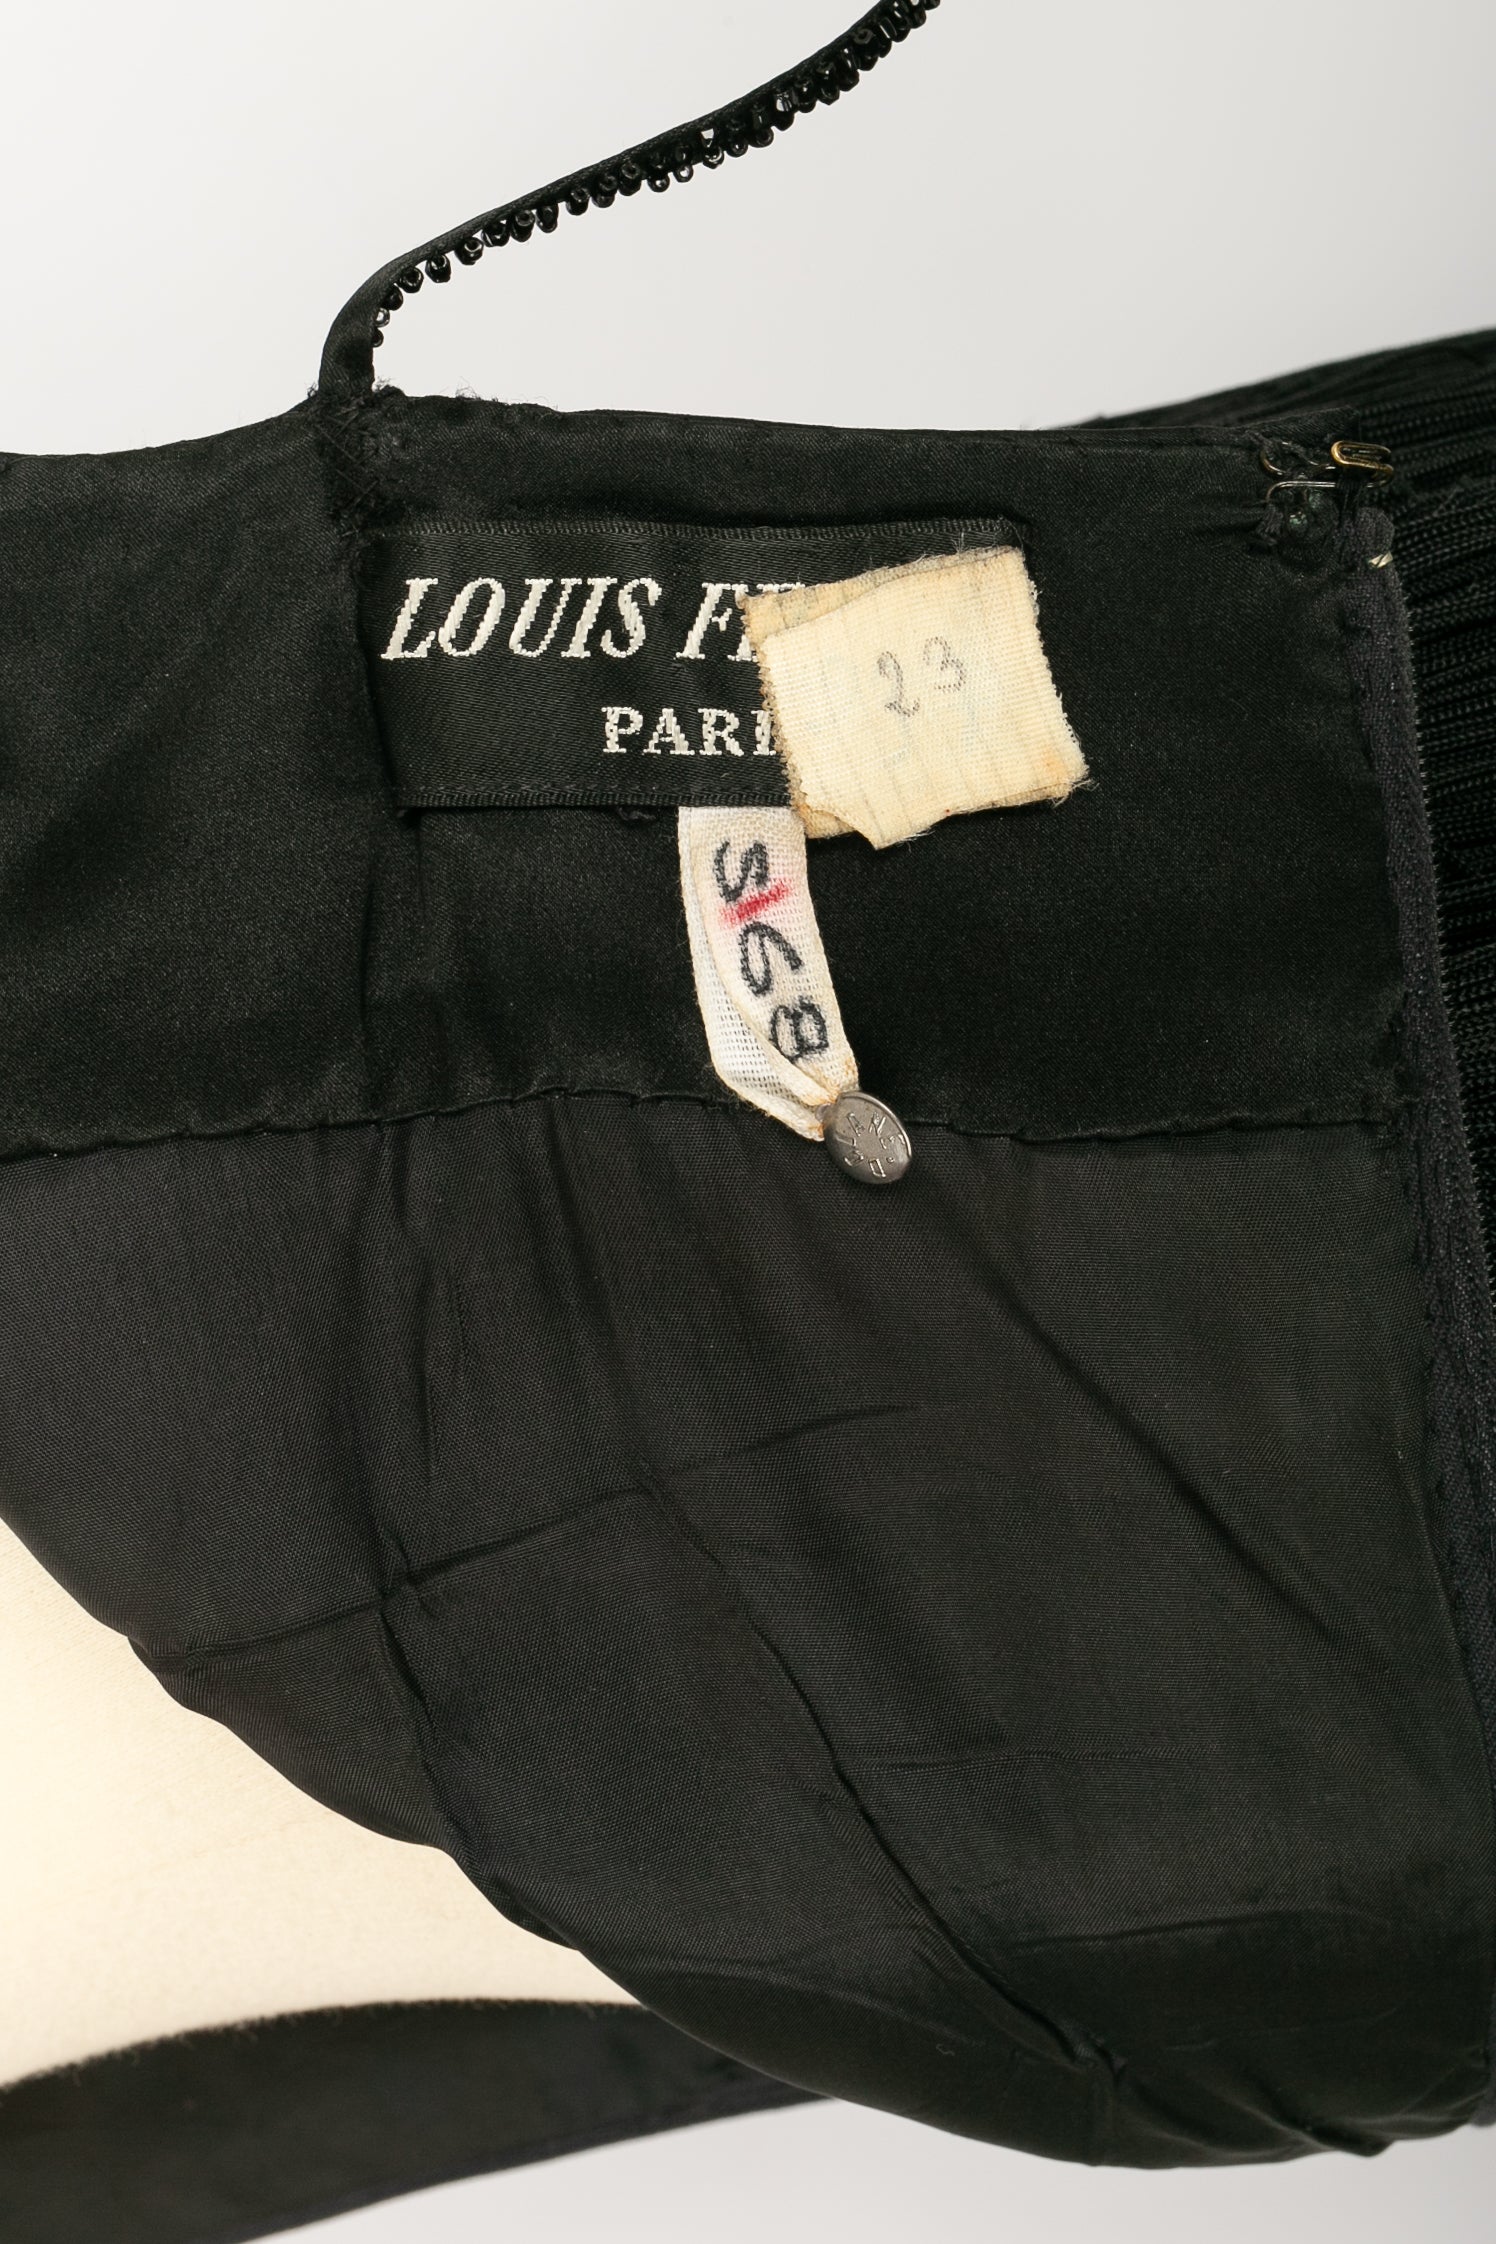 Louis Féraud Haute Couture Automne-Hiver 1988/1989